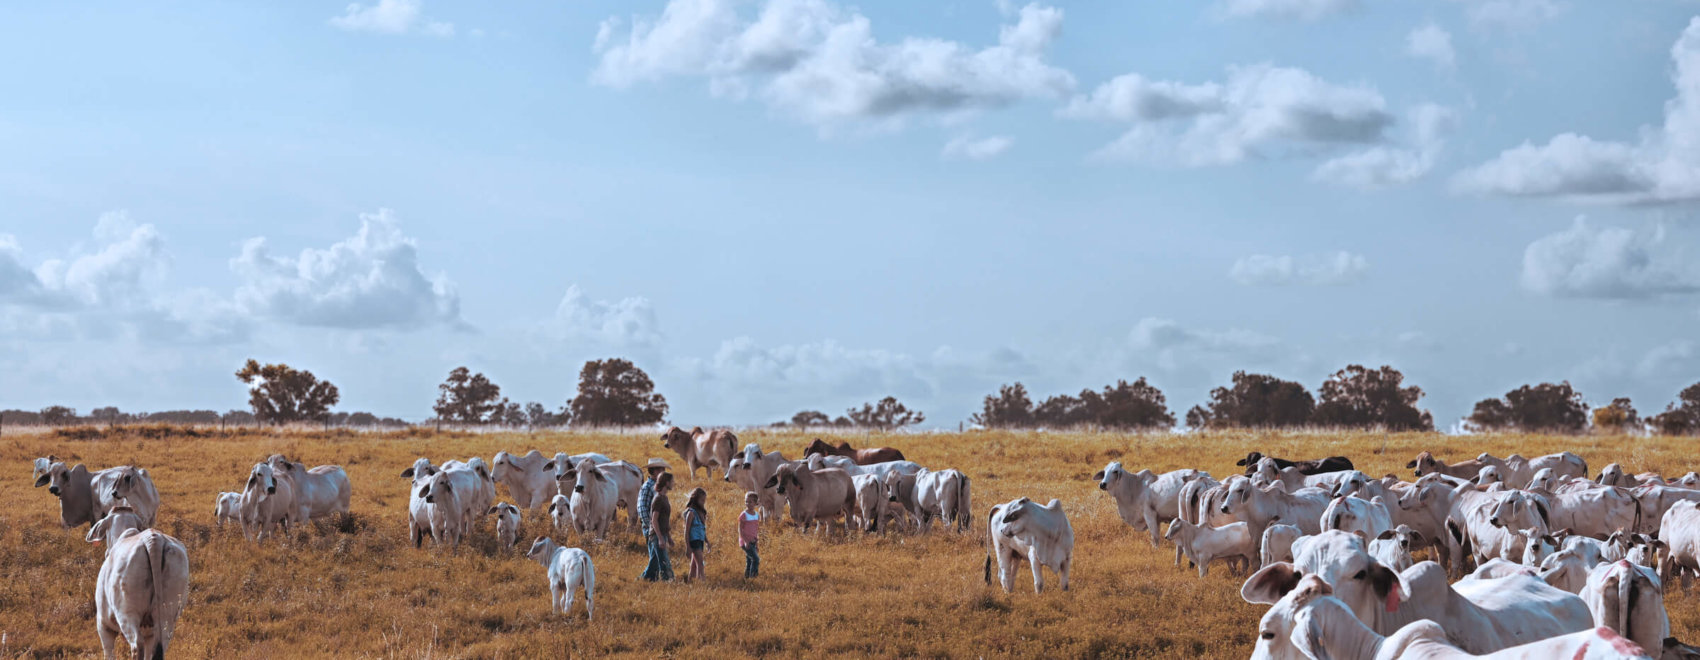 Family in cow herd in field